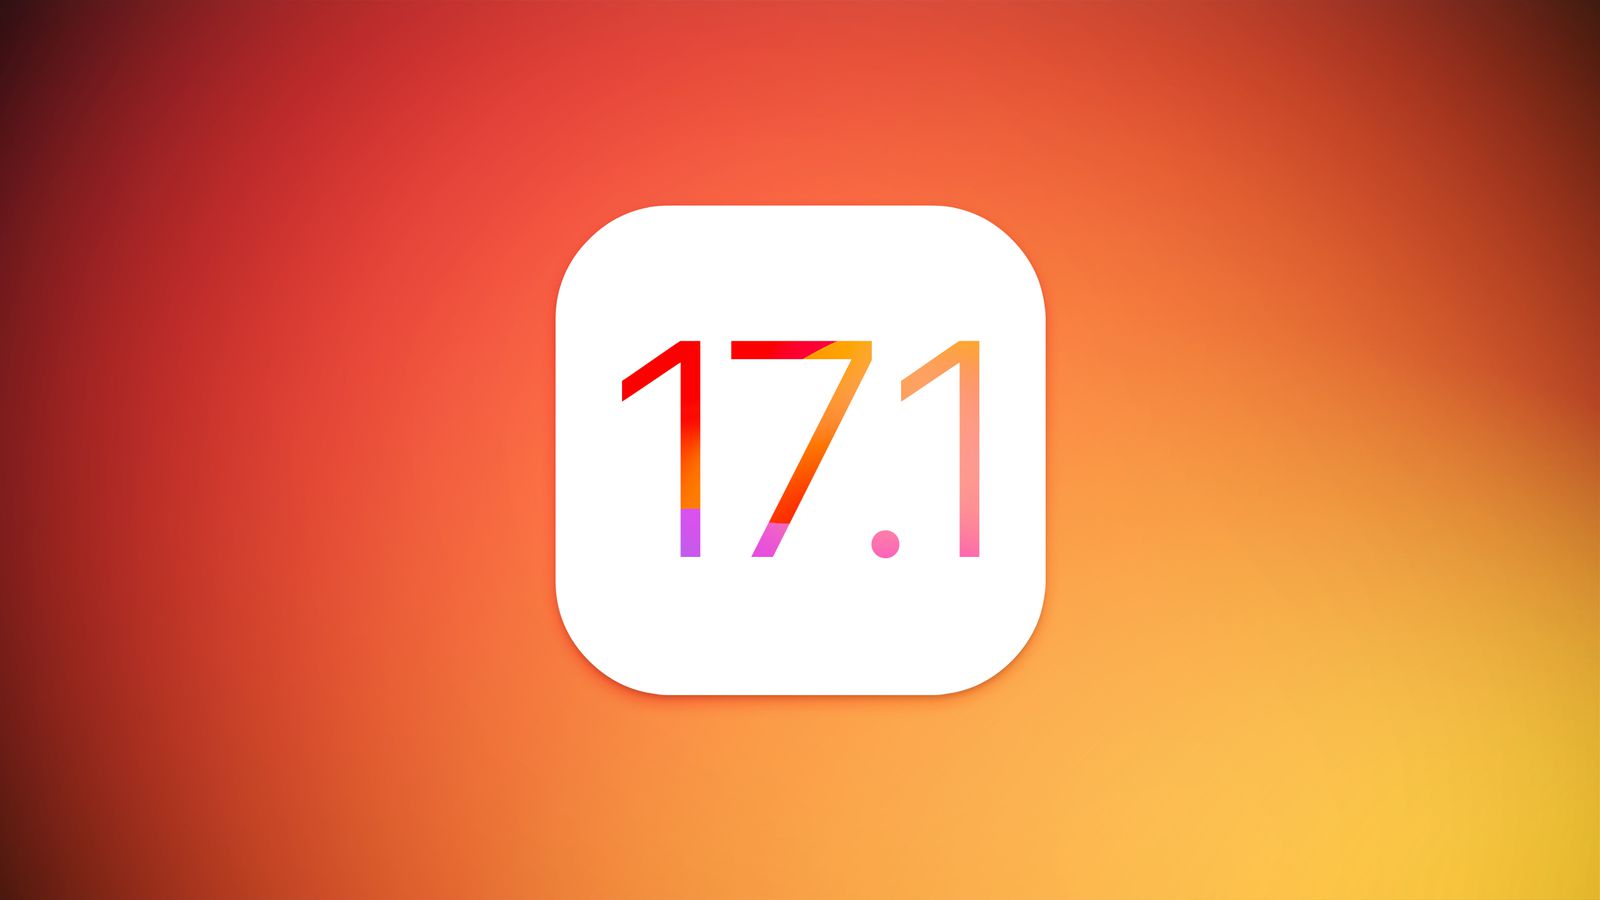 Efter macOS Sonoma 14.1 Beta 1: den første testudgave af iOS 17.1 er blevet frigivet